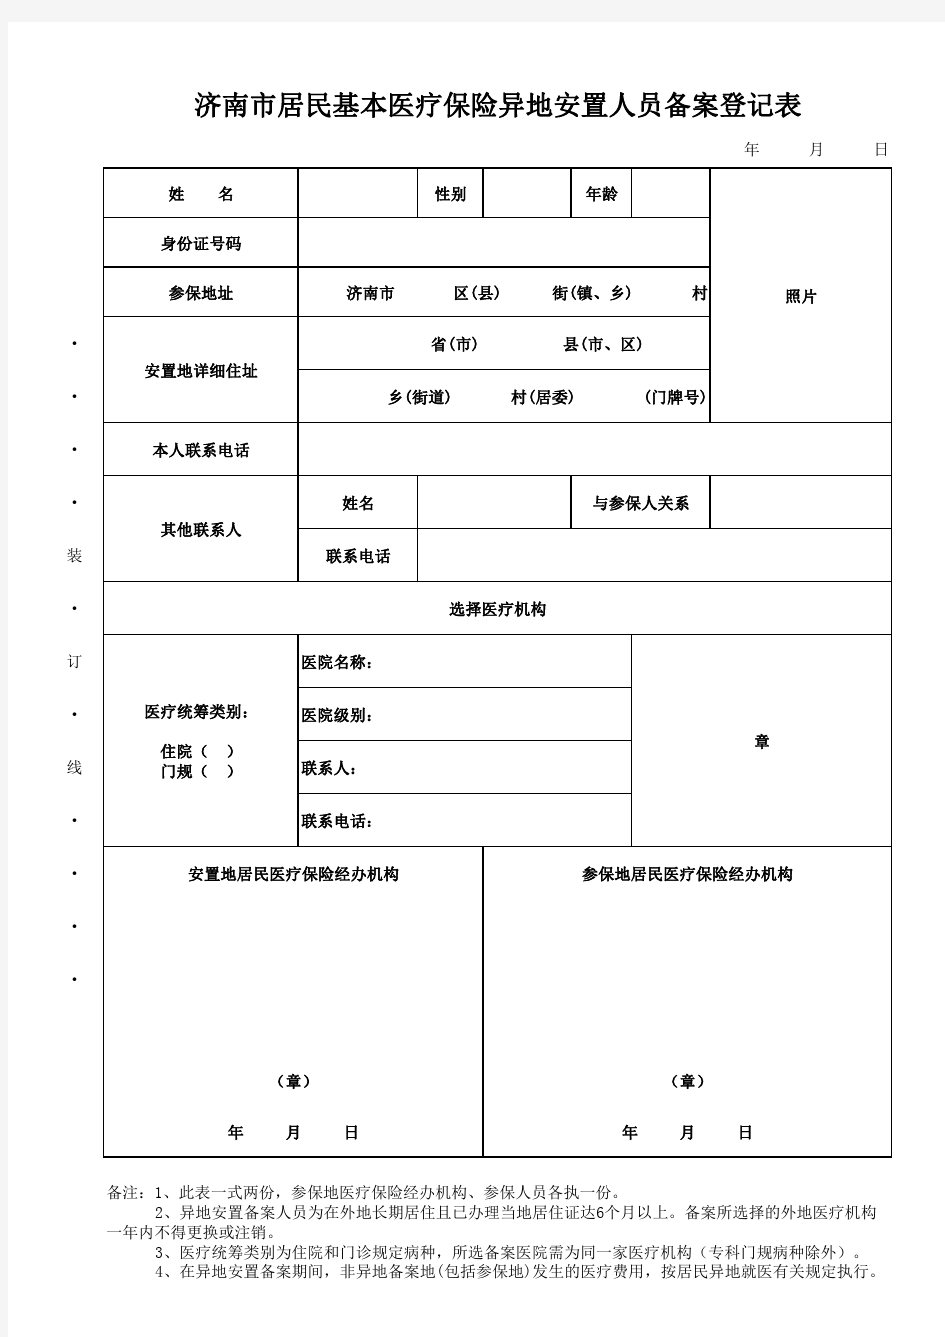 济南市居民基本医疗保险异地安置人员备案登记表(2018年)